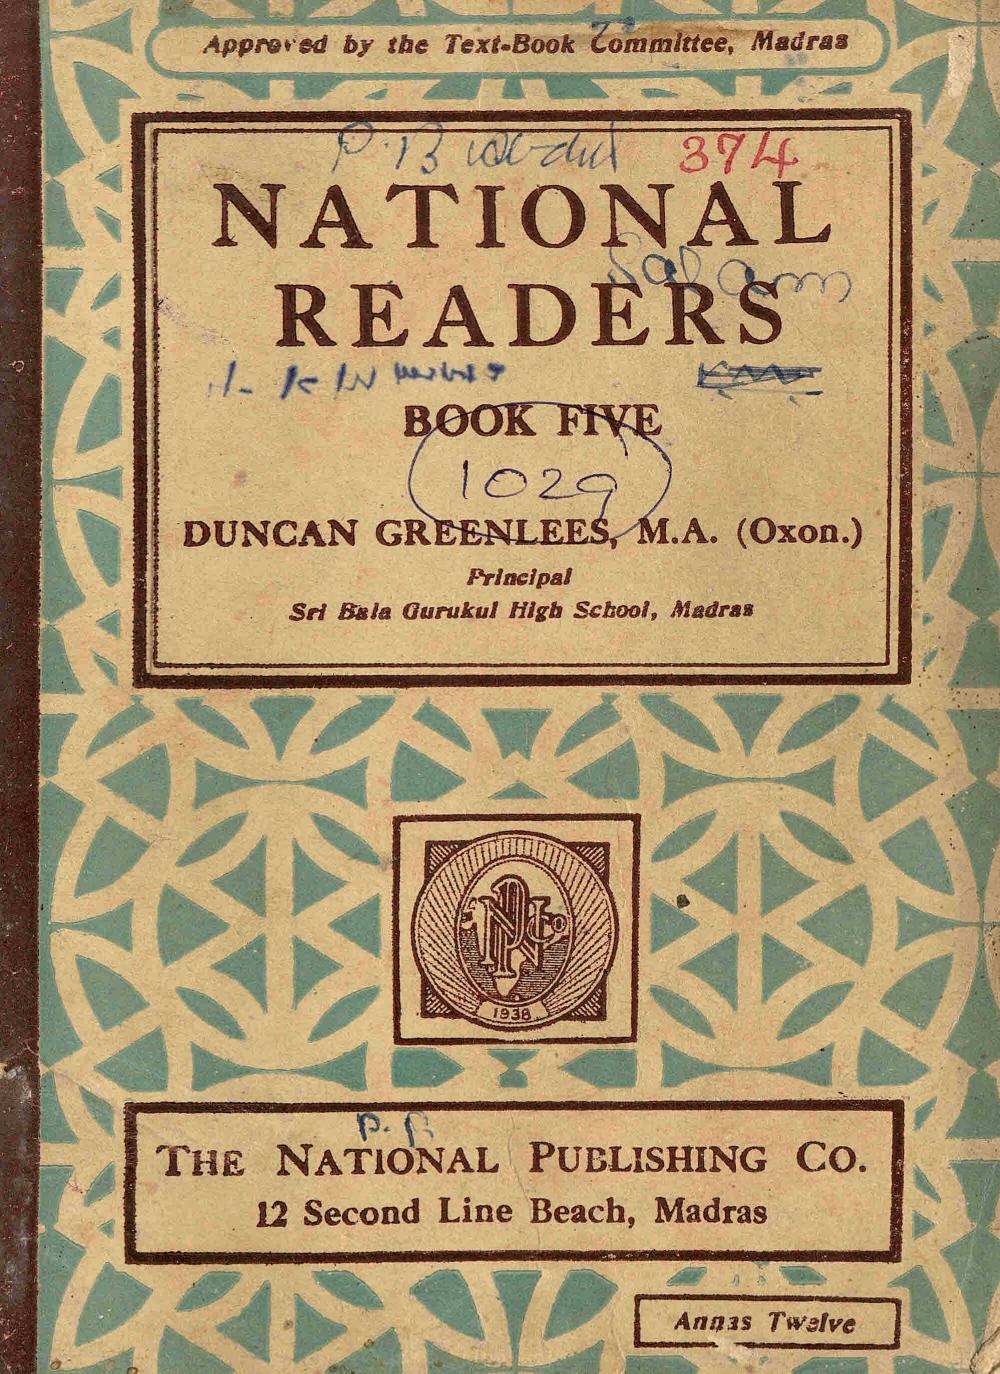 1941 - National Readers Book Five - Duncan Greenlees